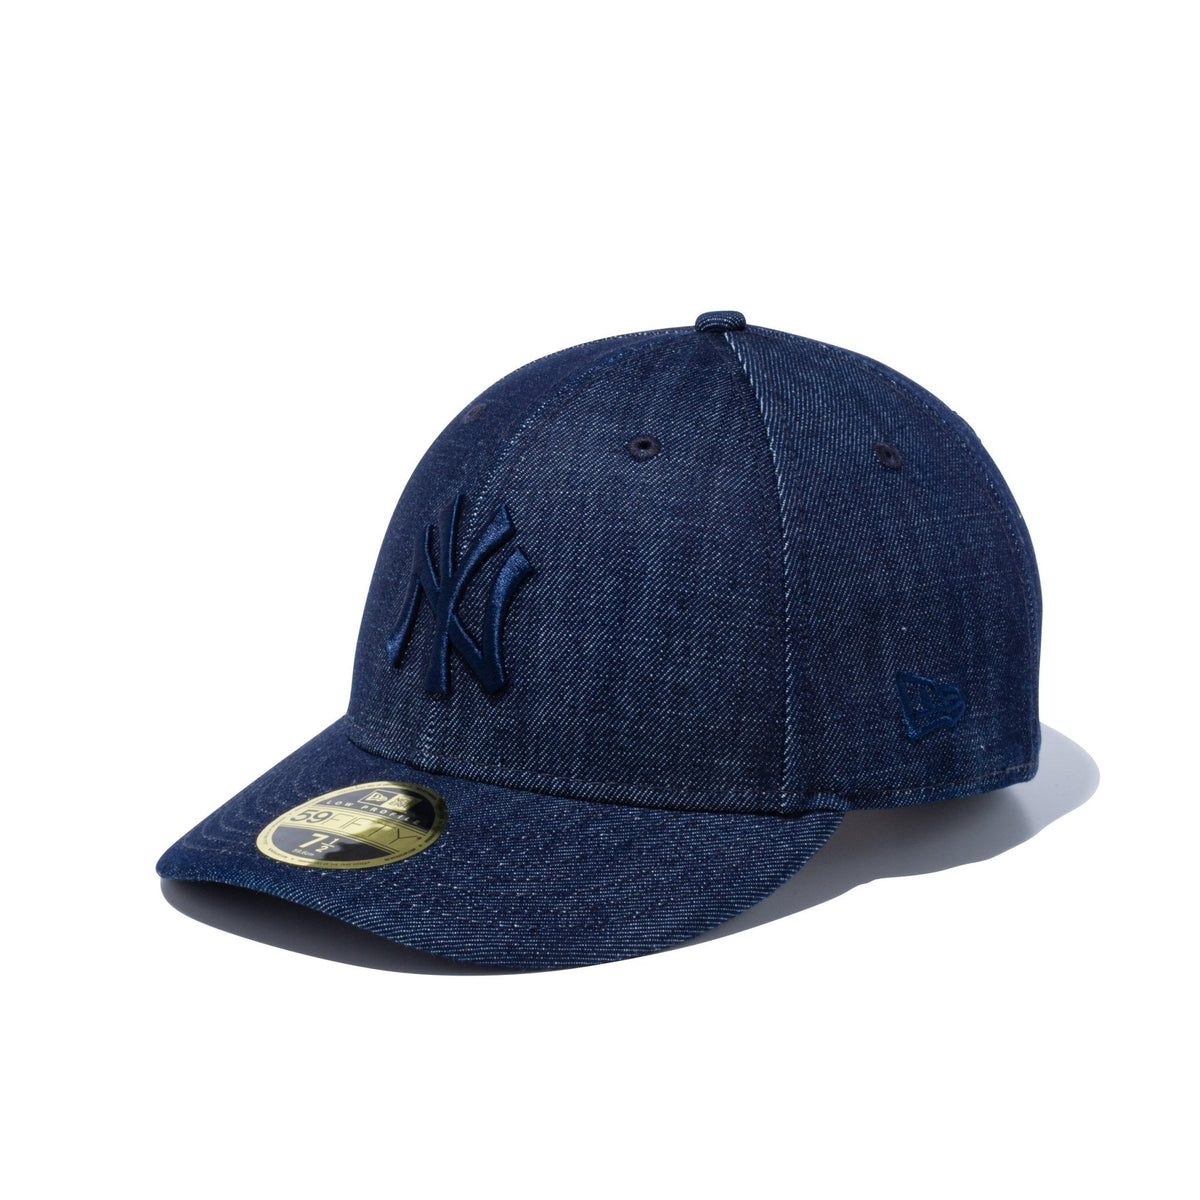 大量購入【送料込・新品】 NEW ERA 59FIFTY ヤンキース ウォッシュドデニム 帽子